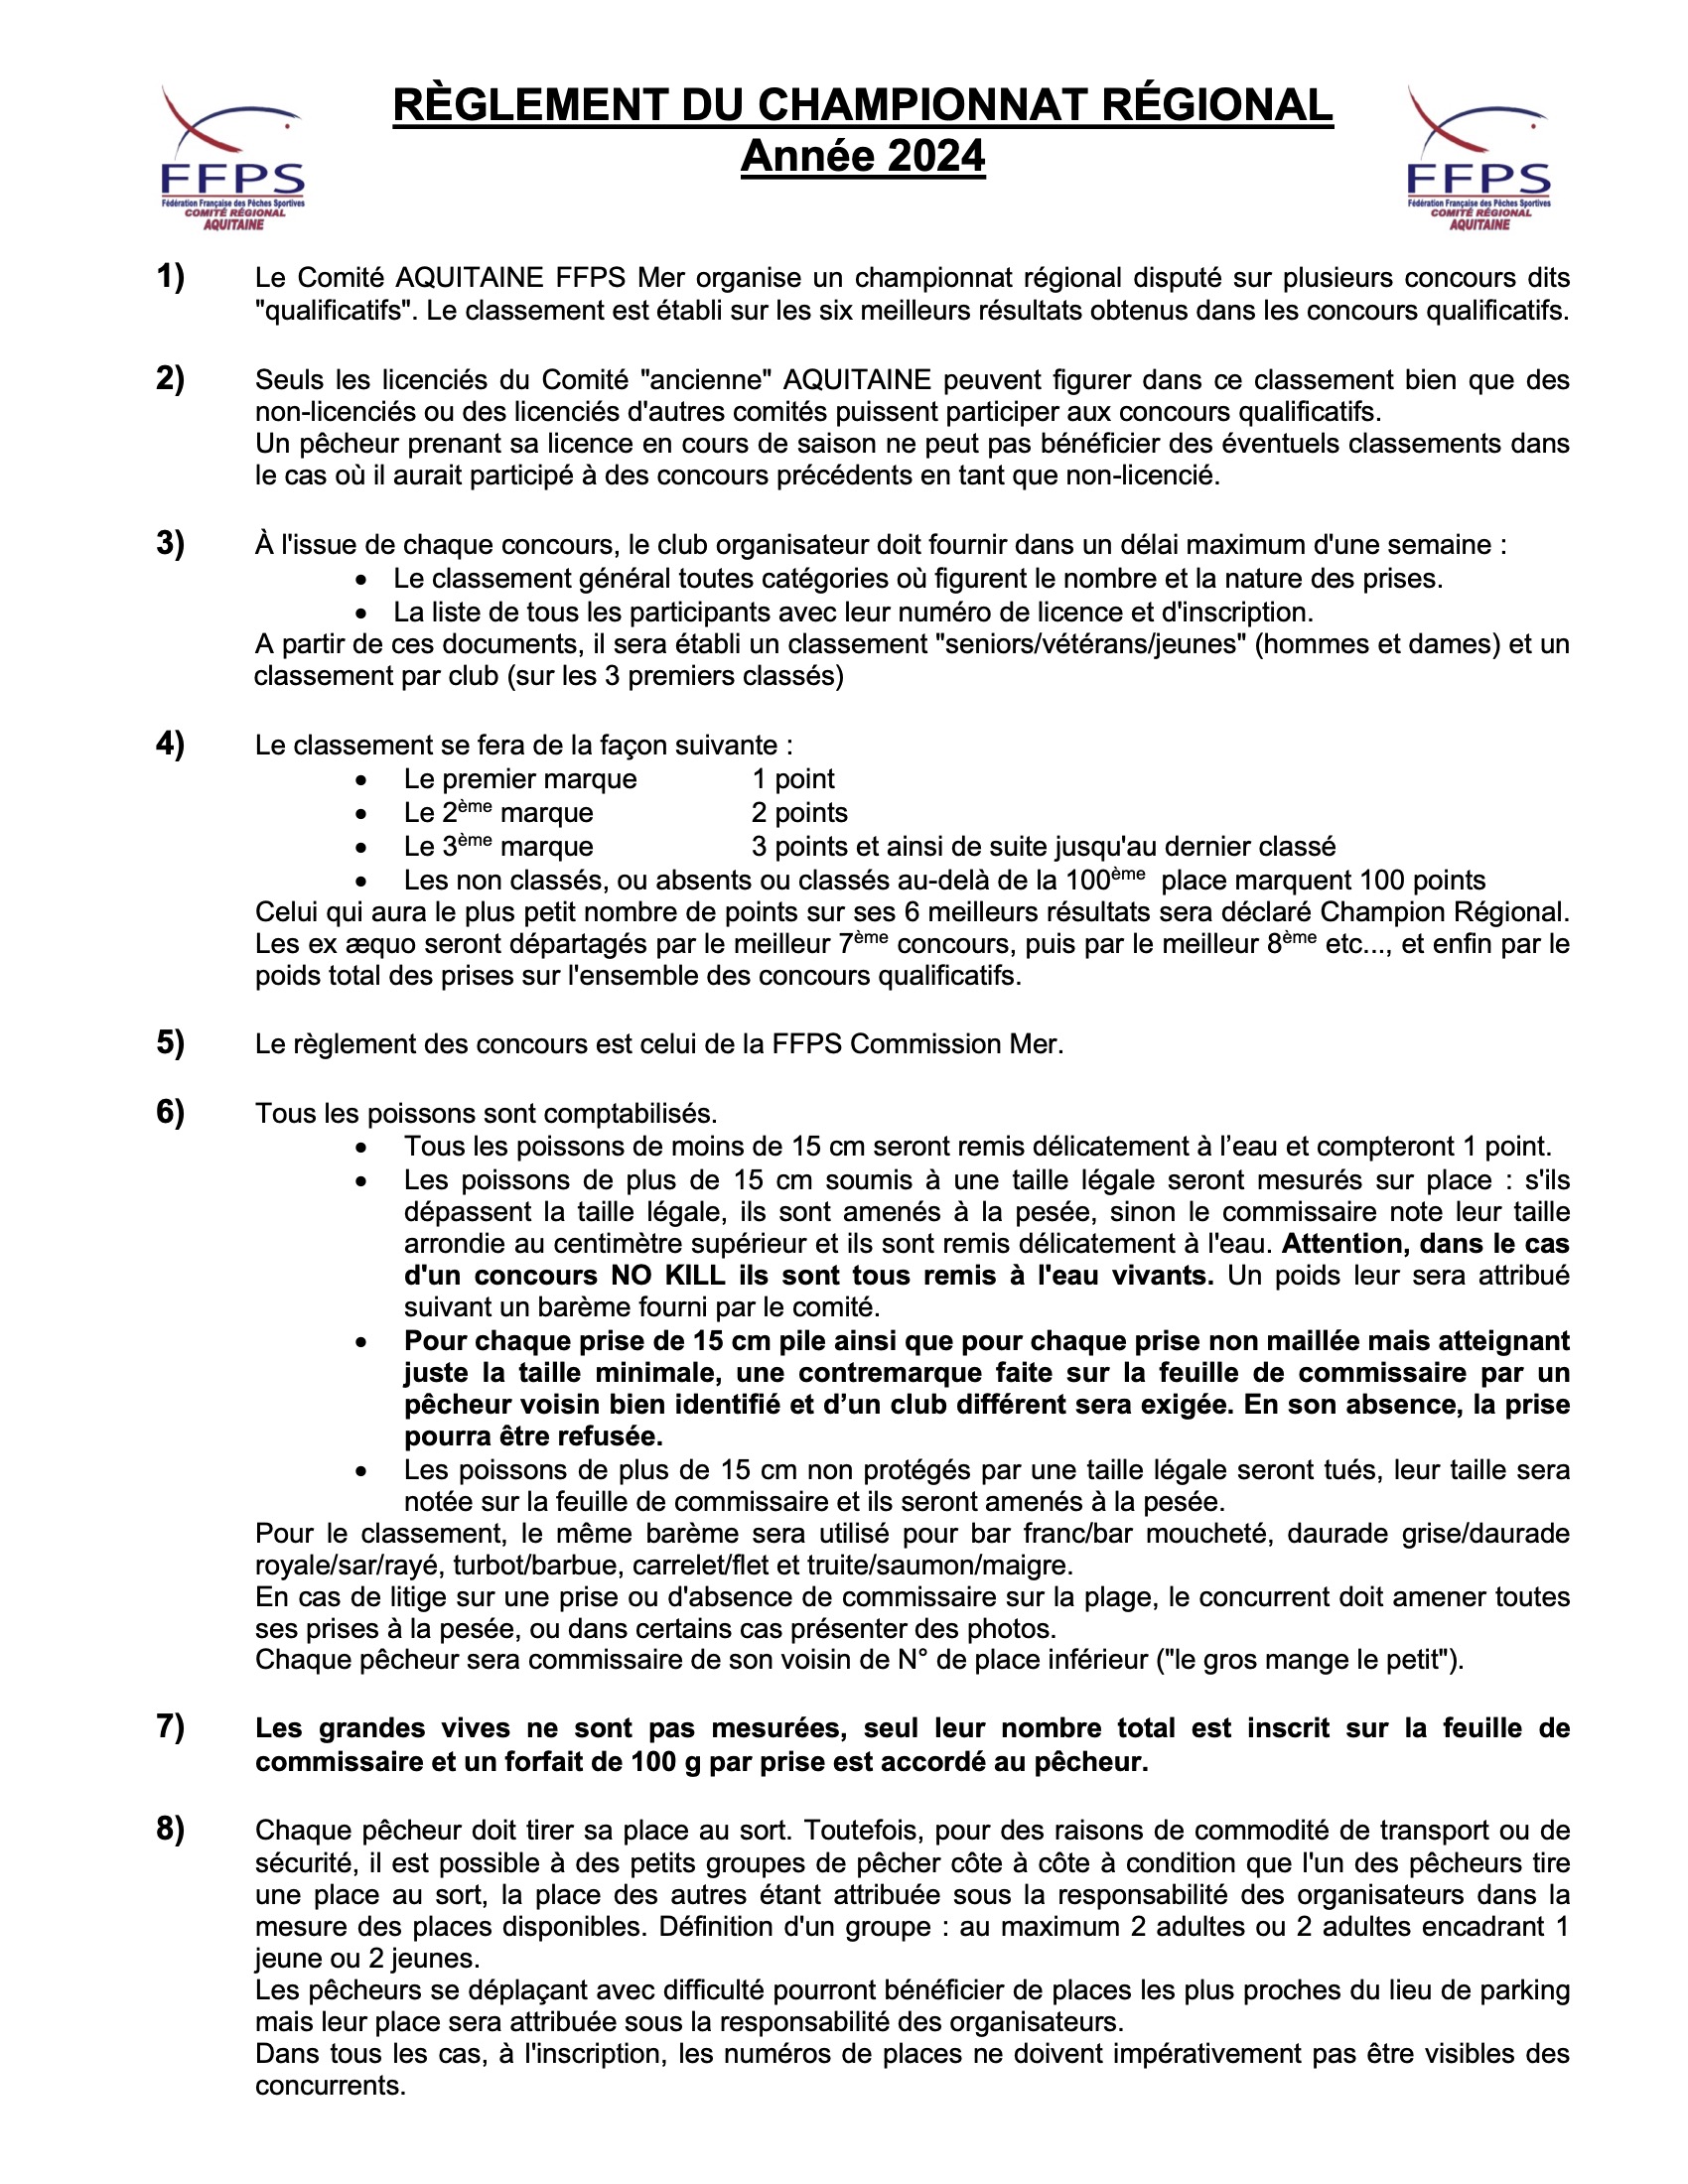 Reglement regional Aquitaine 2023